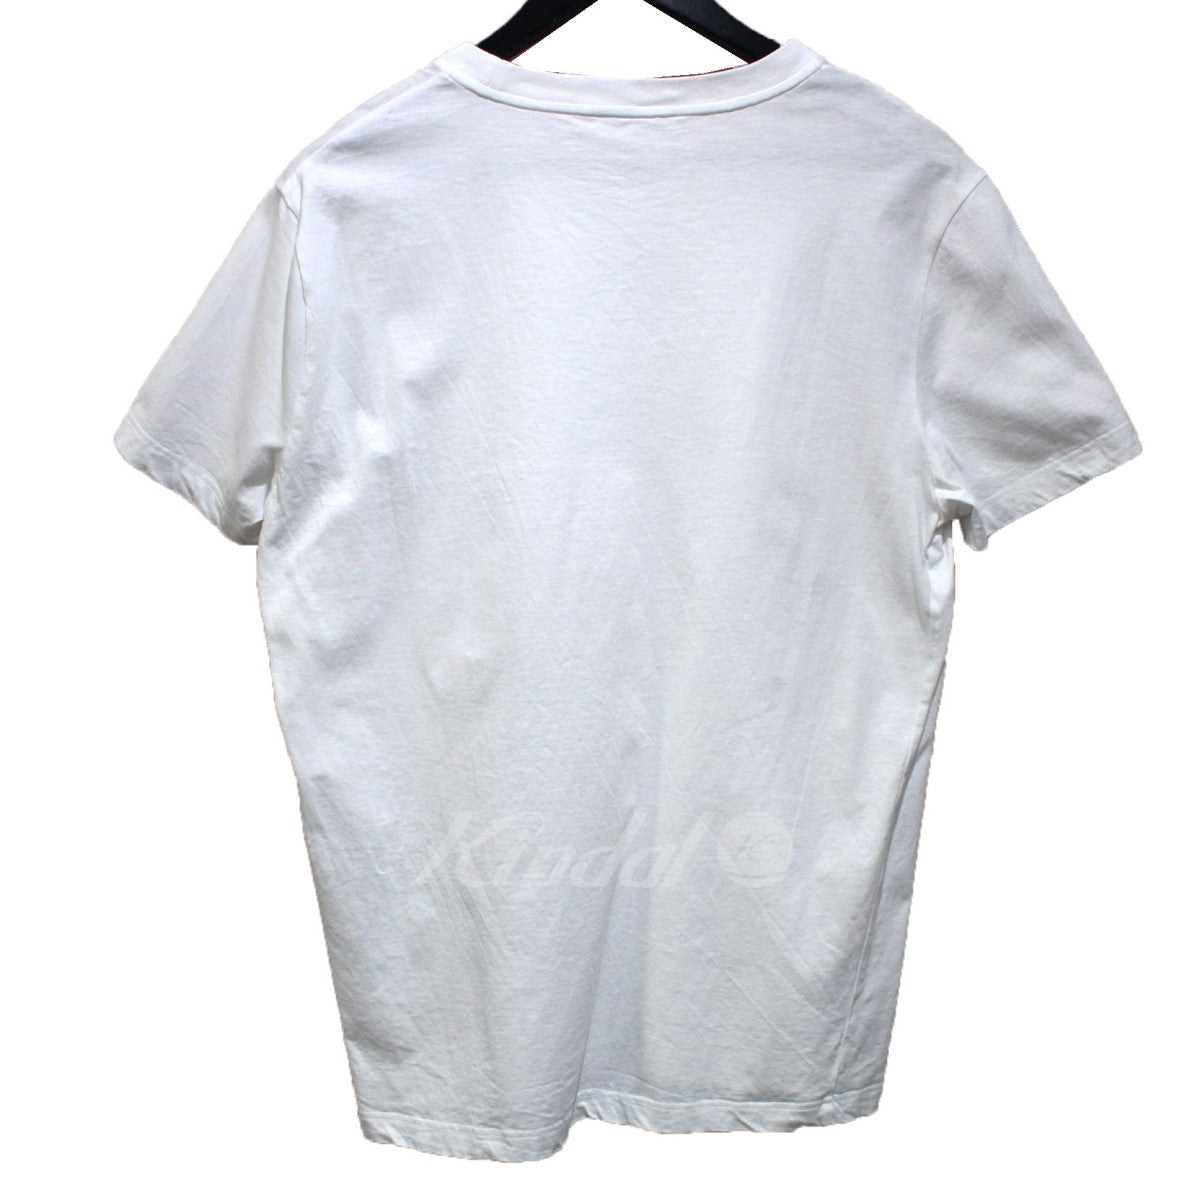 PRADA(プラダ) 3パック コットンジャージー 半袖Tシャツ DNA829 